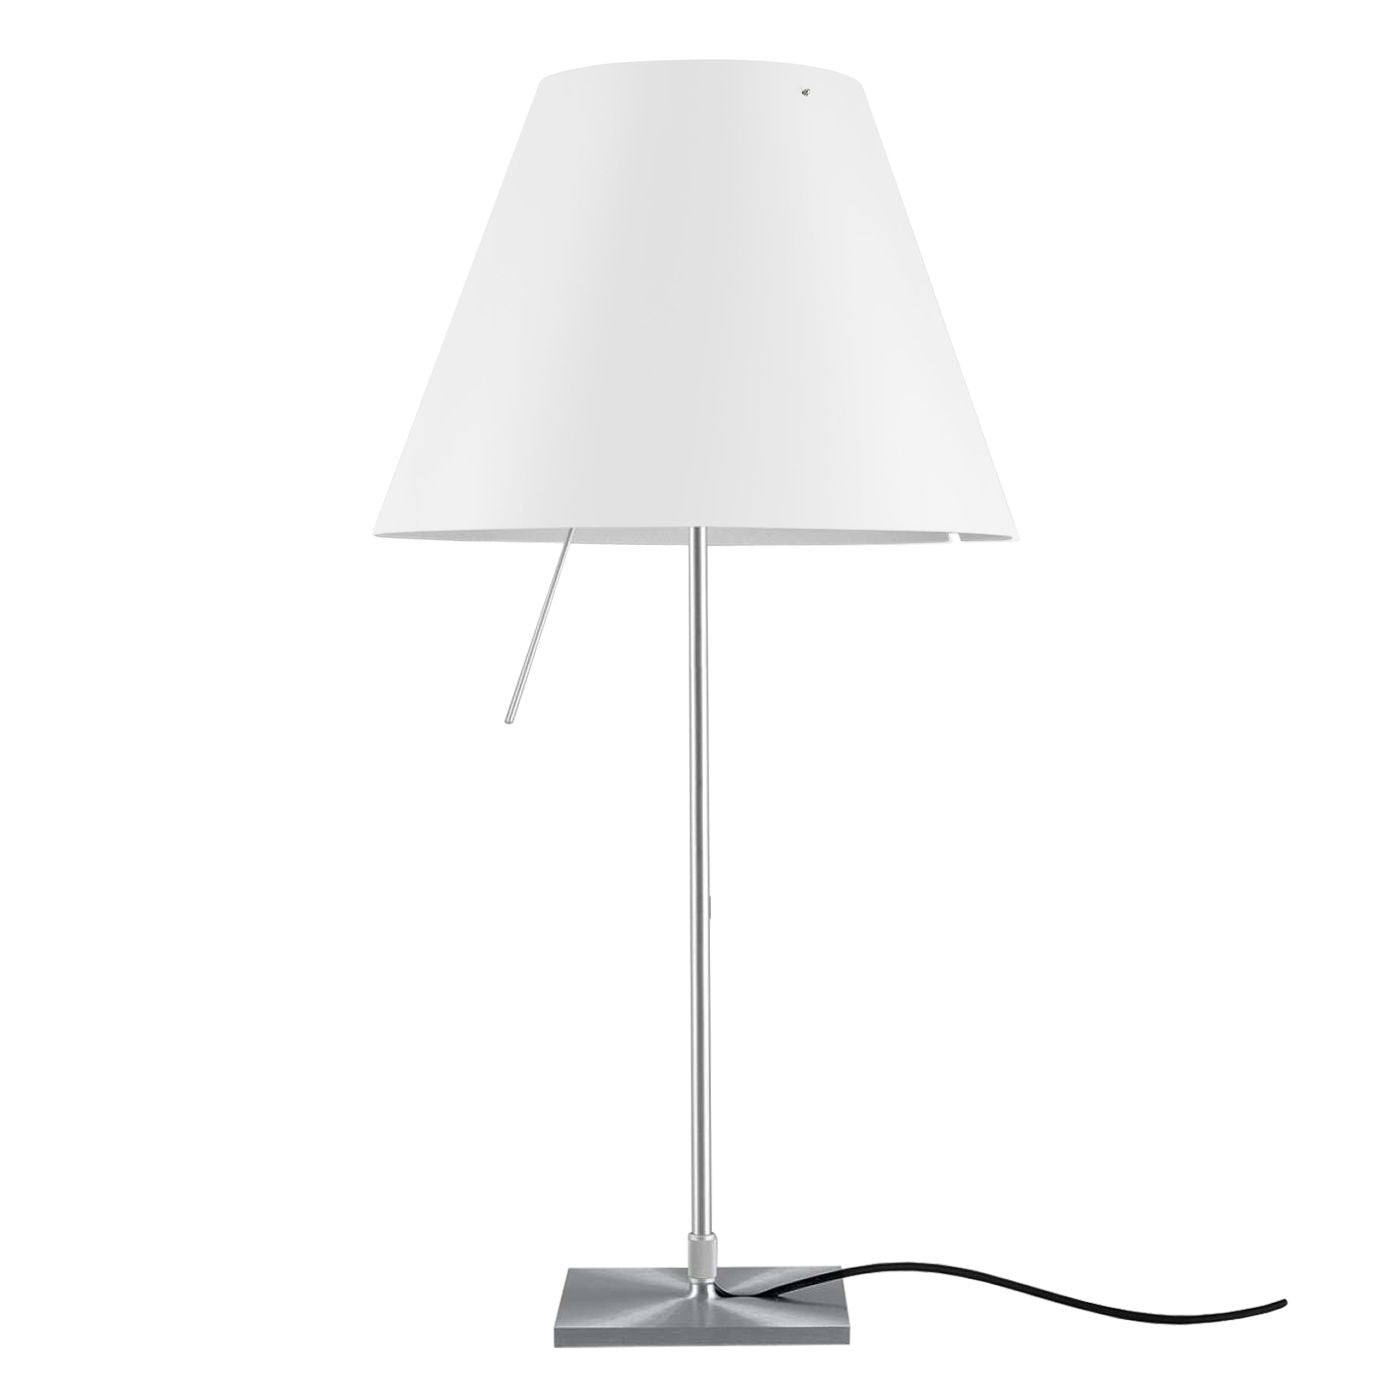 Luceplan - Costanza tafellamp aluminium